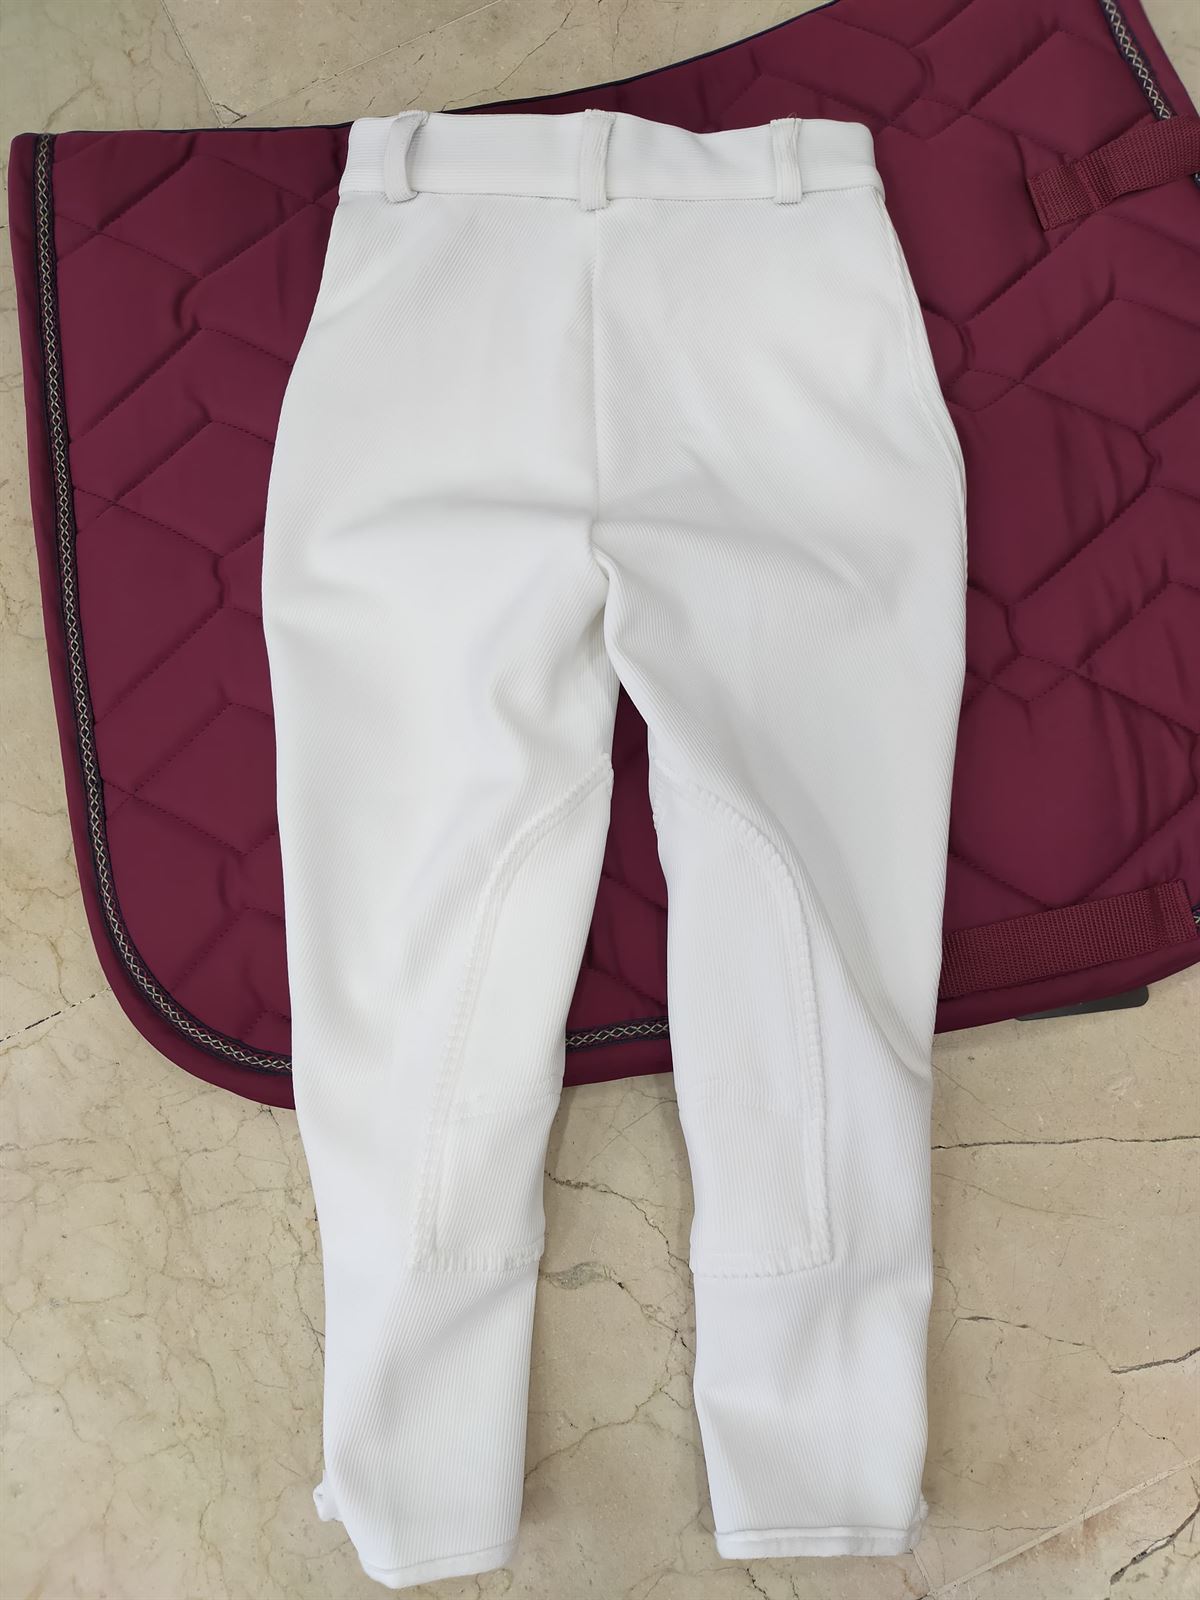 Pantalón unisex TUFF RIDER Country color blanco TALLA 48 - Imagen 5